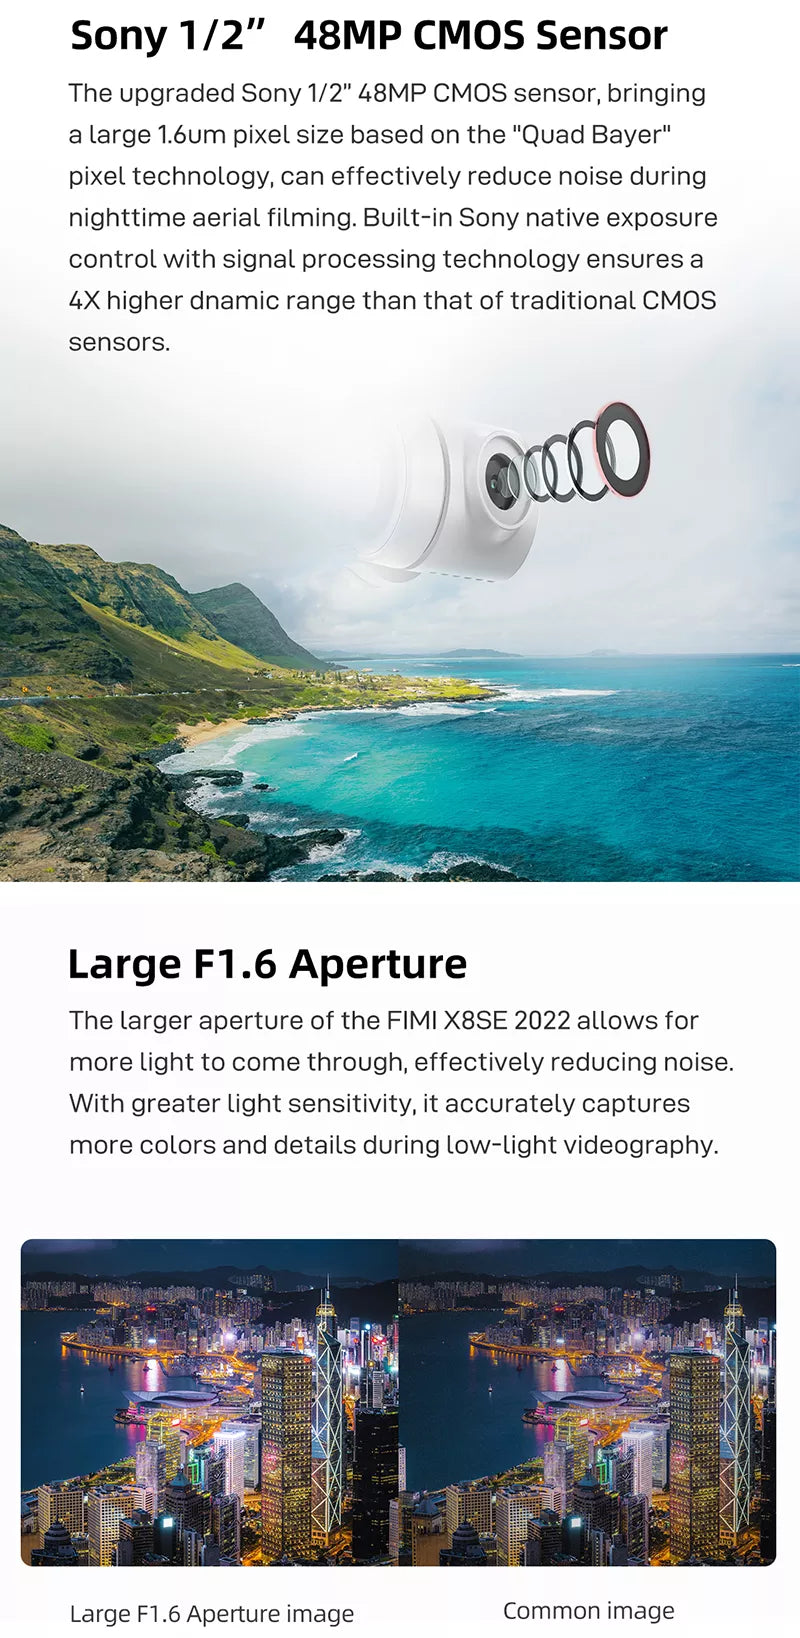 FIMI X8 SE 2022 Drone, Sony 1/2" 48MP CMOS sensor features a large 1.6um pixel size 